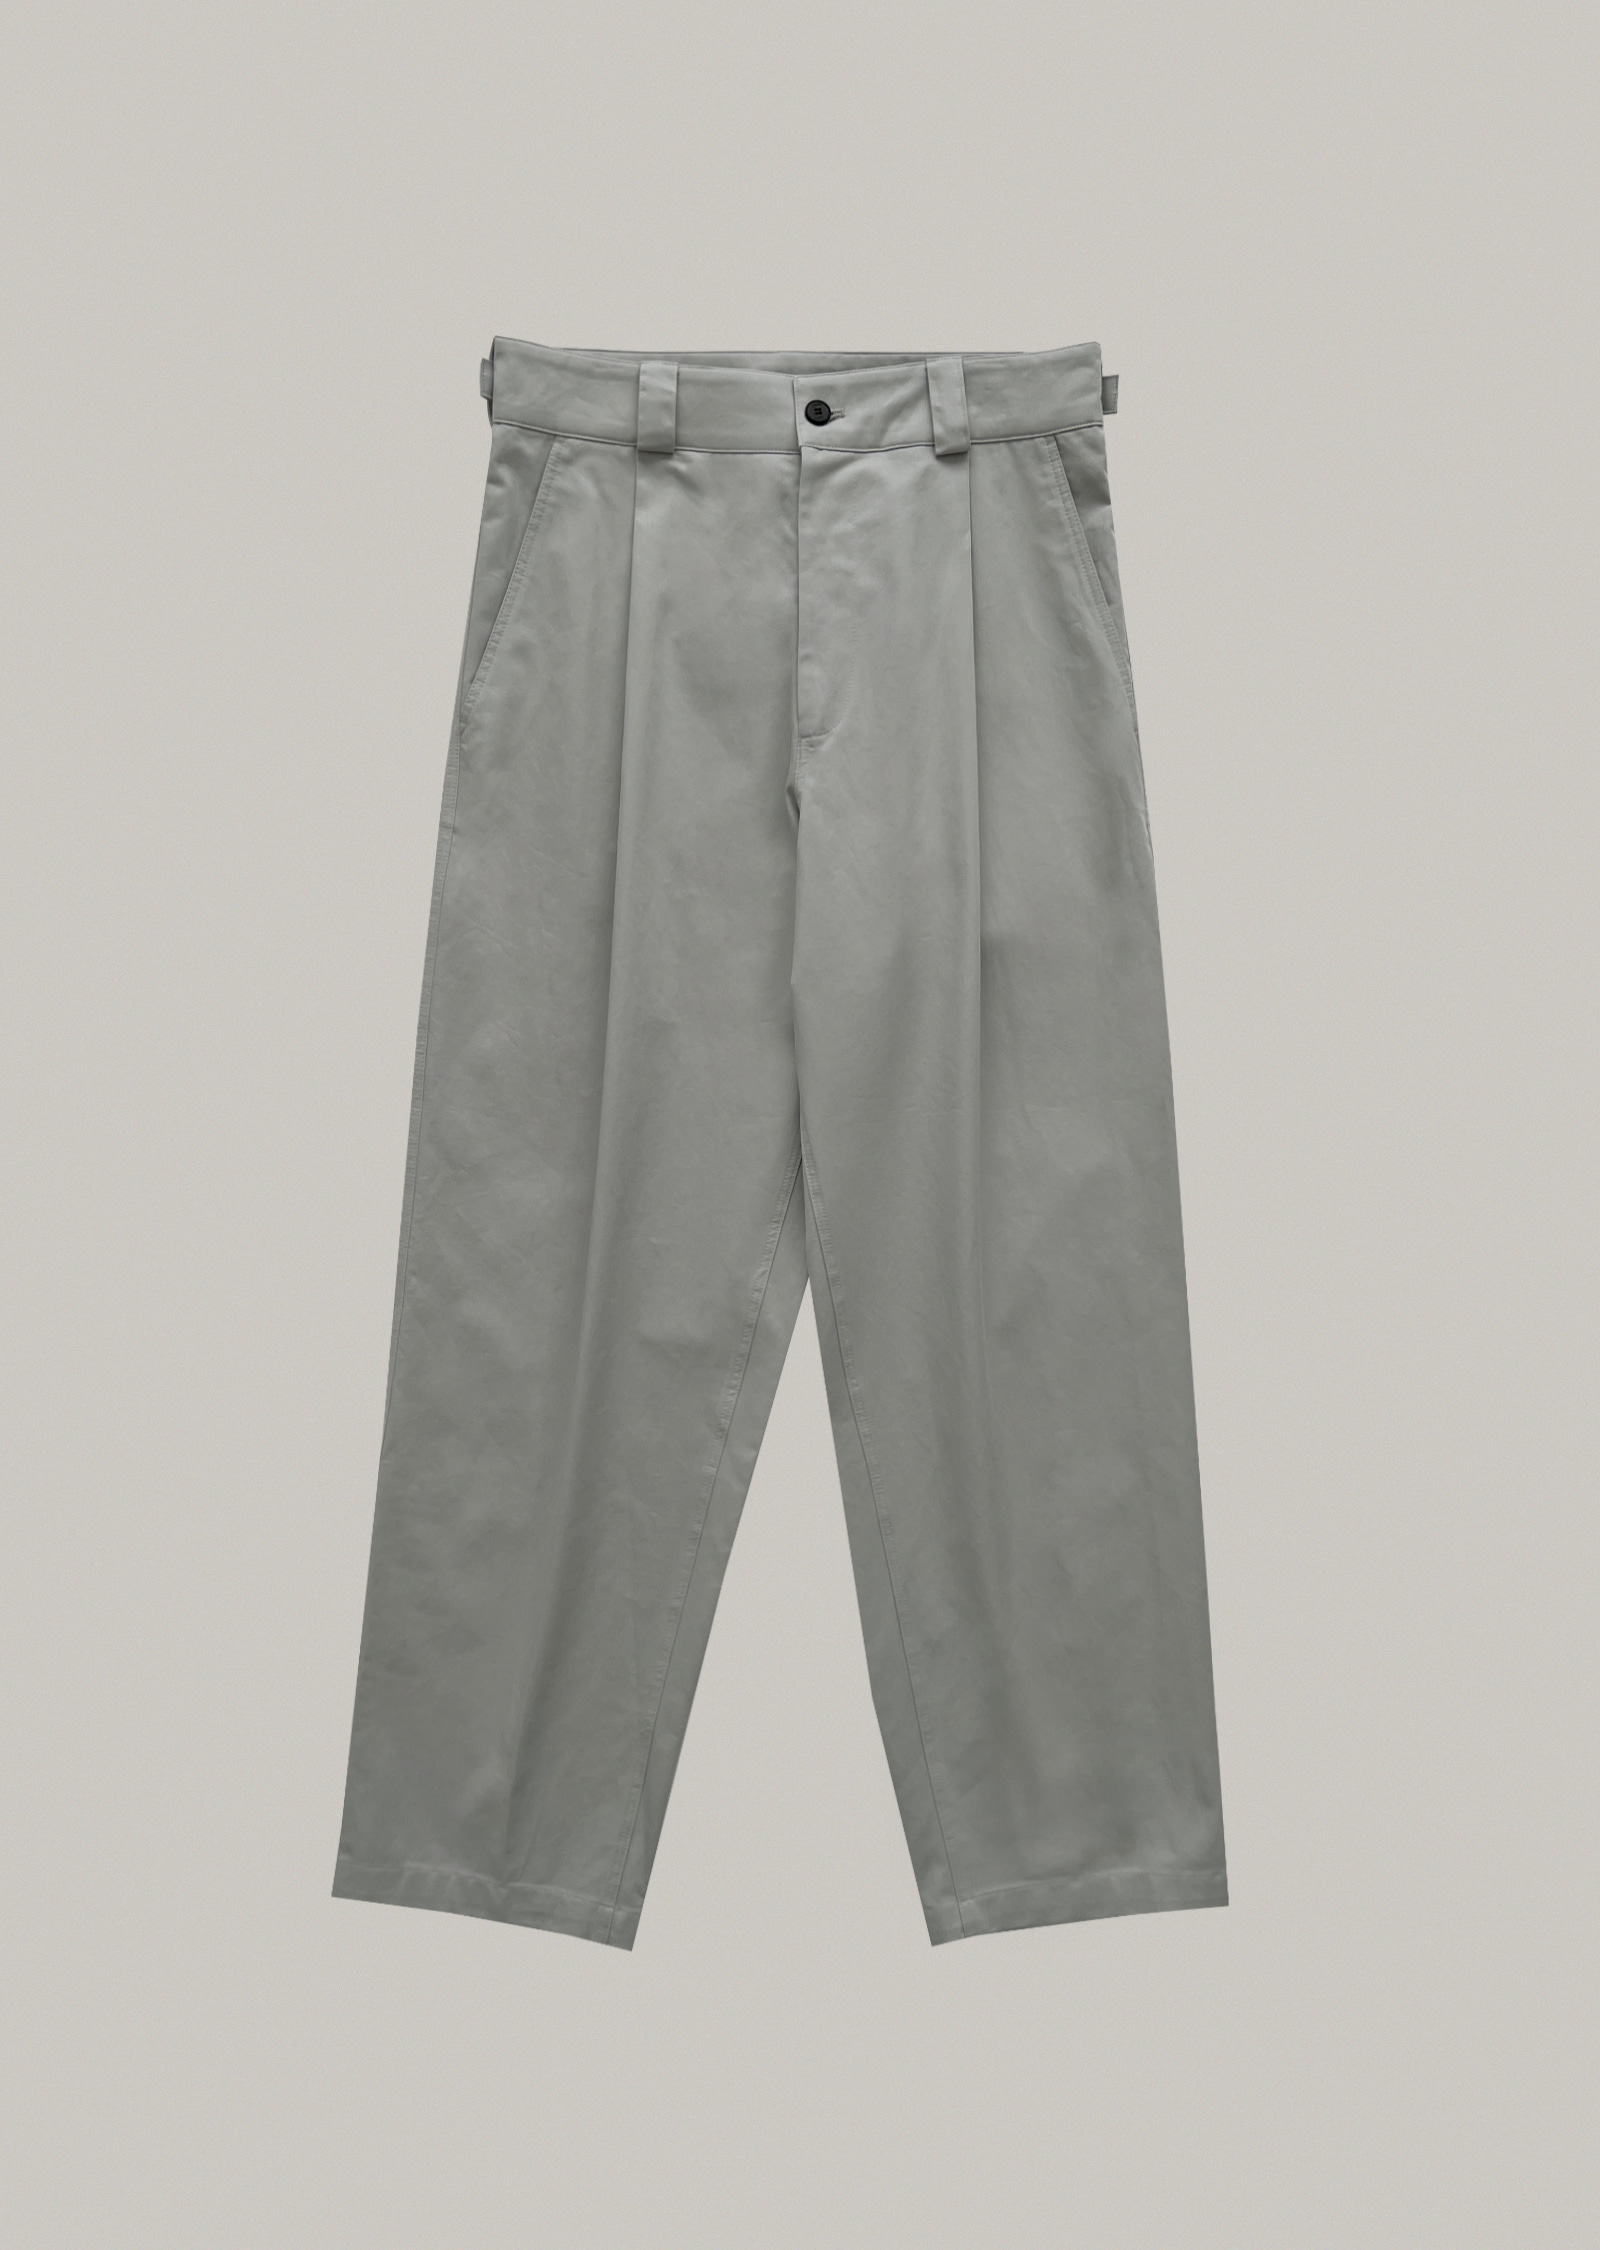 buckle pants (gray)